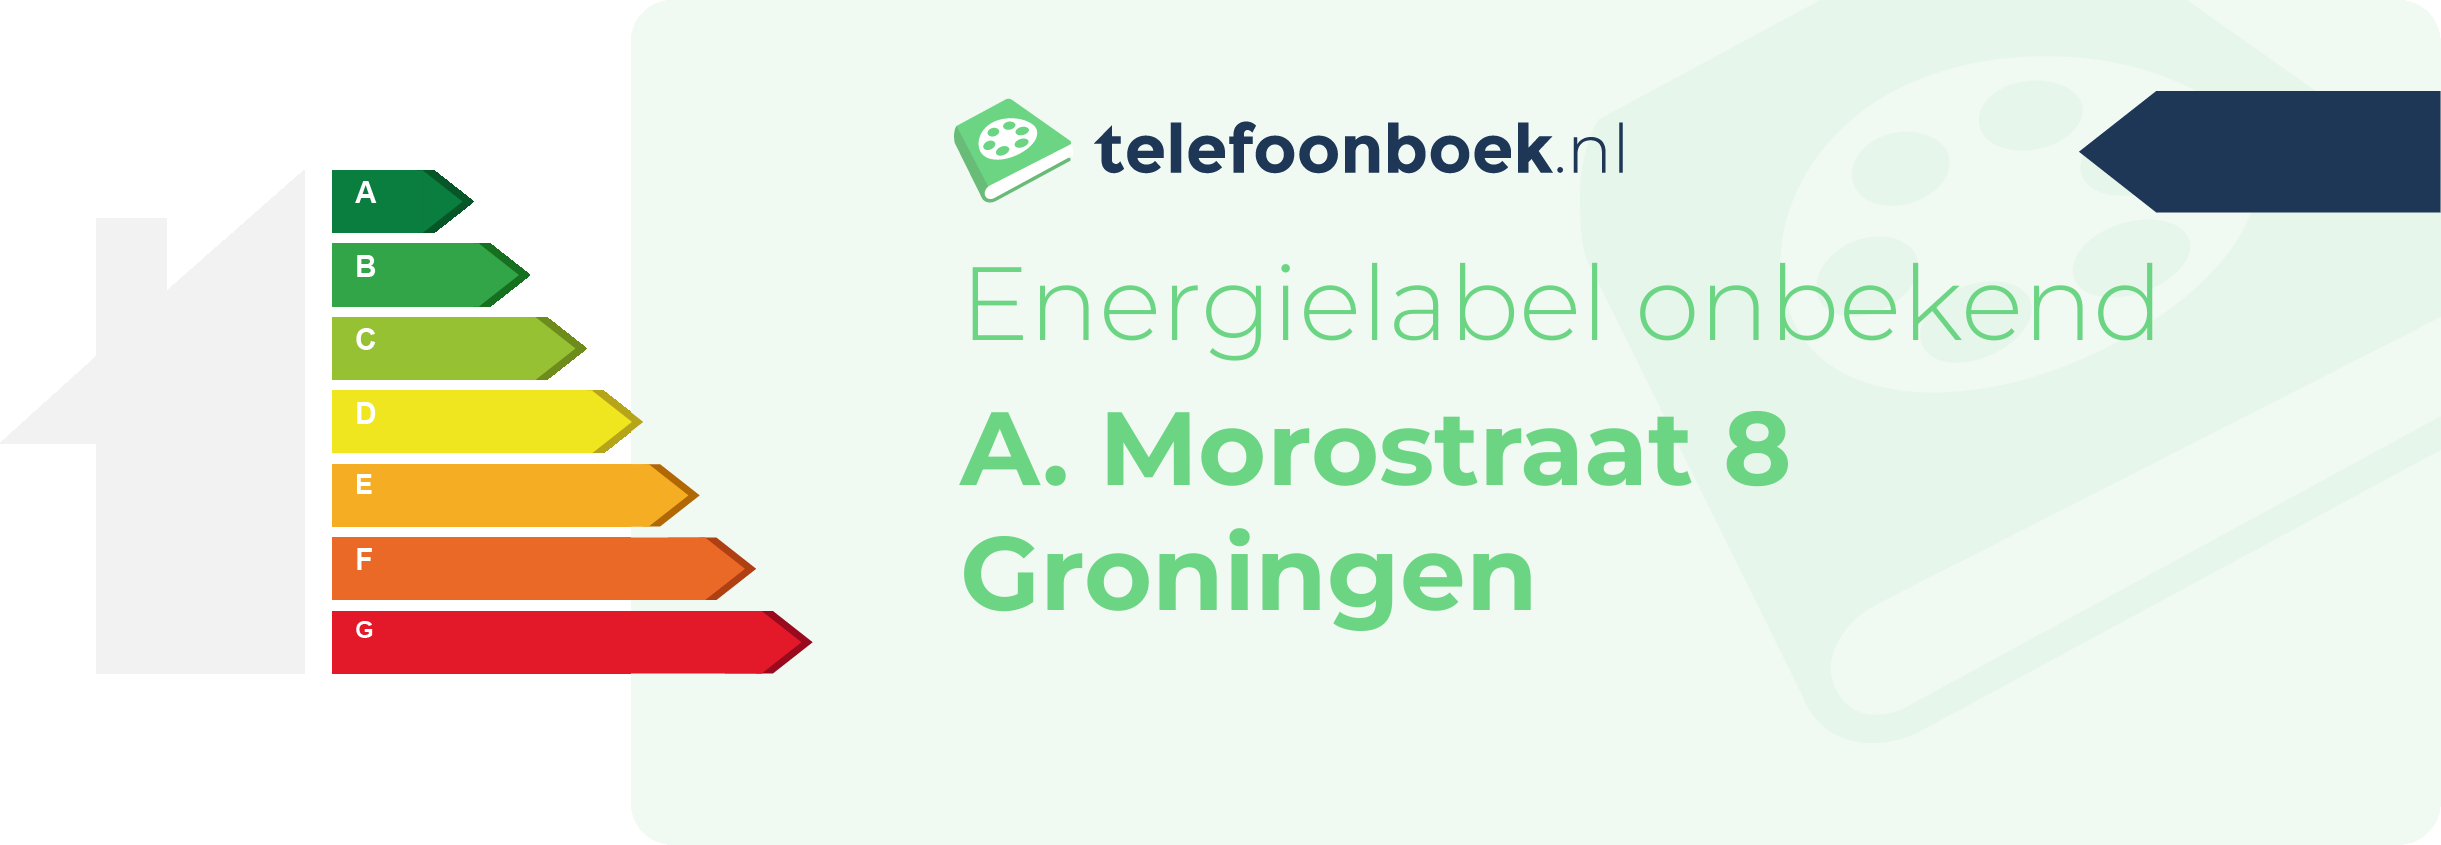 Energielabel A. Morostraat 8 Groningen